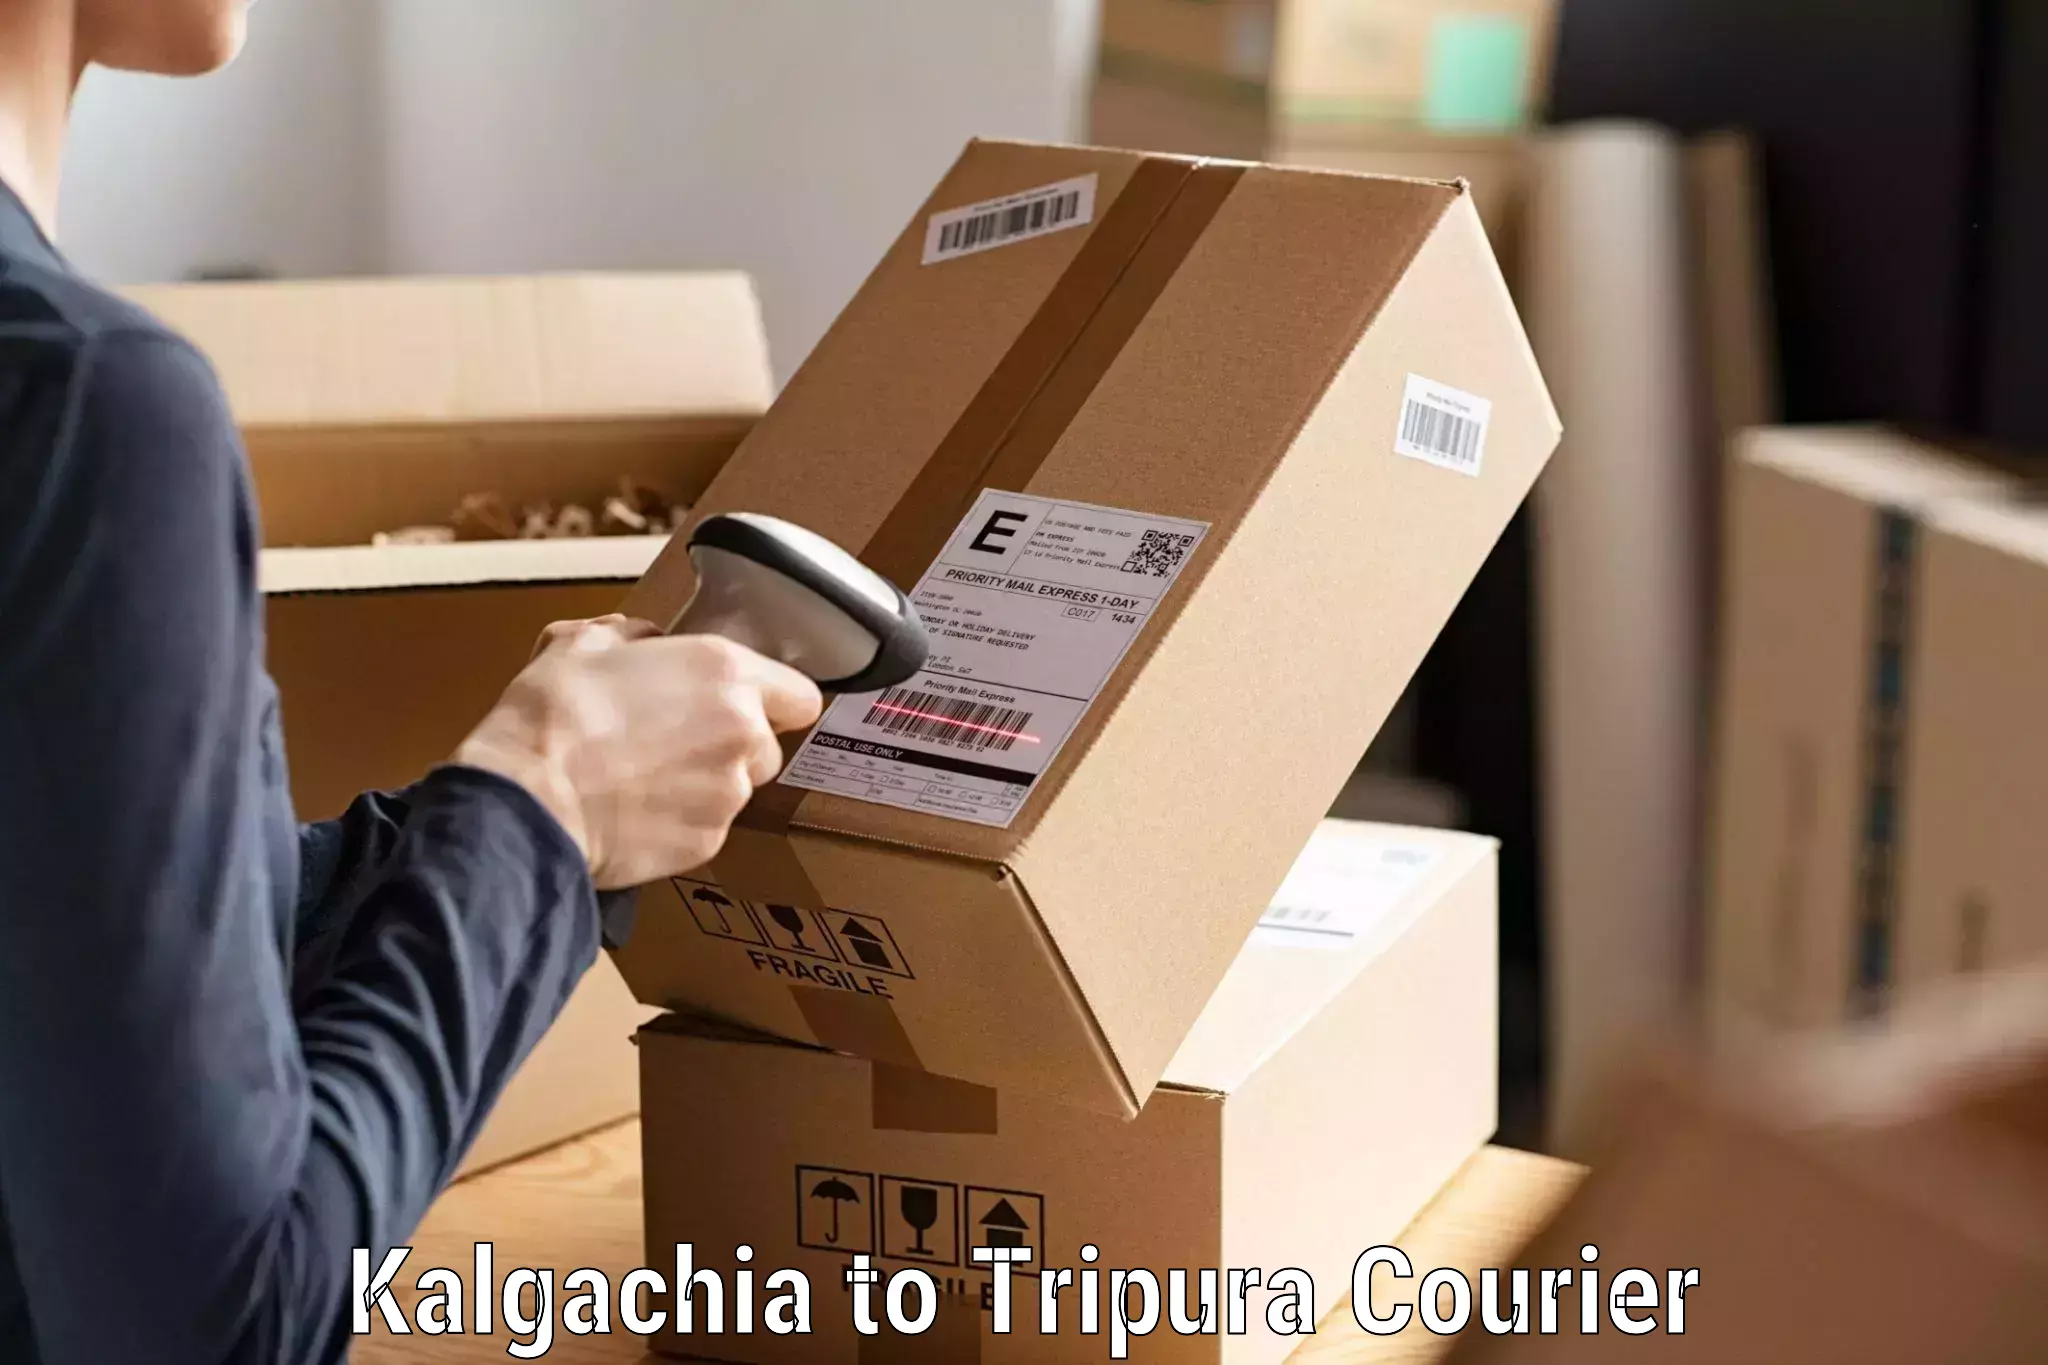 Courier insurance in Kalgachia to IIIT Agartala